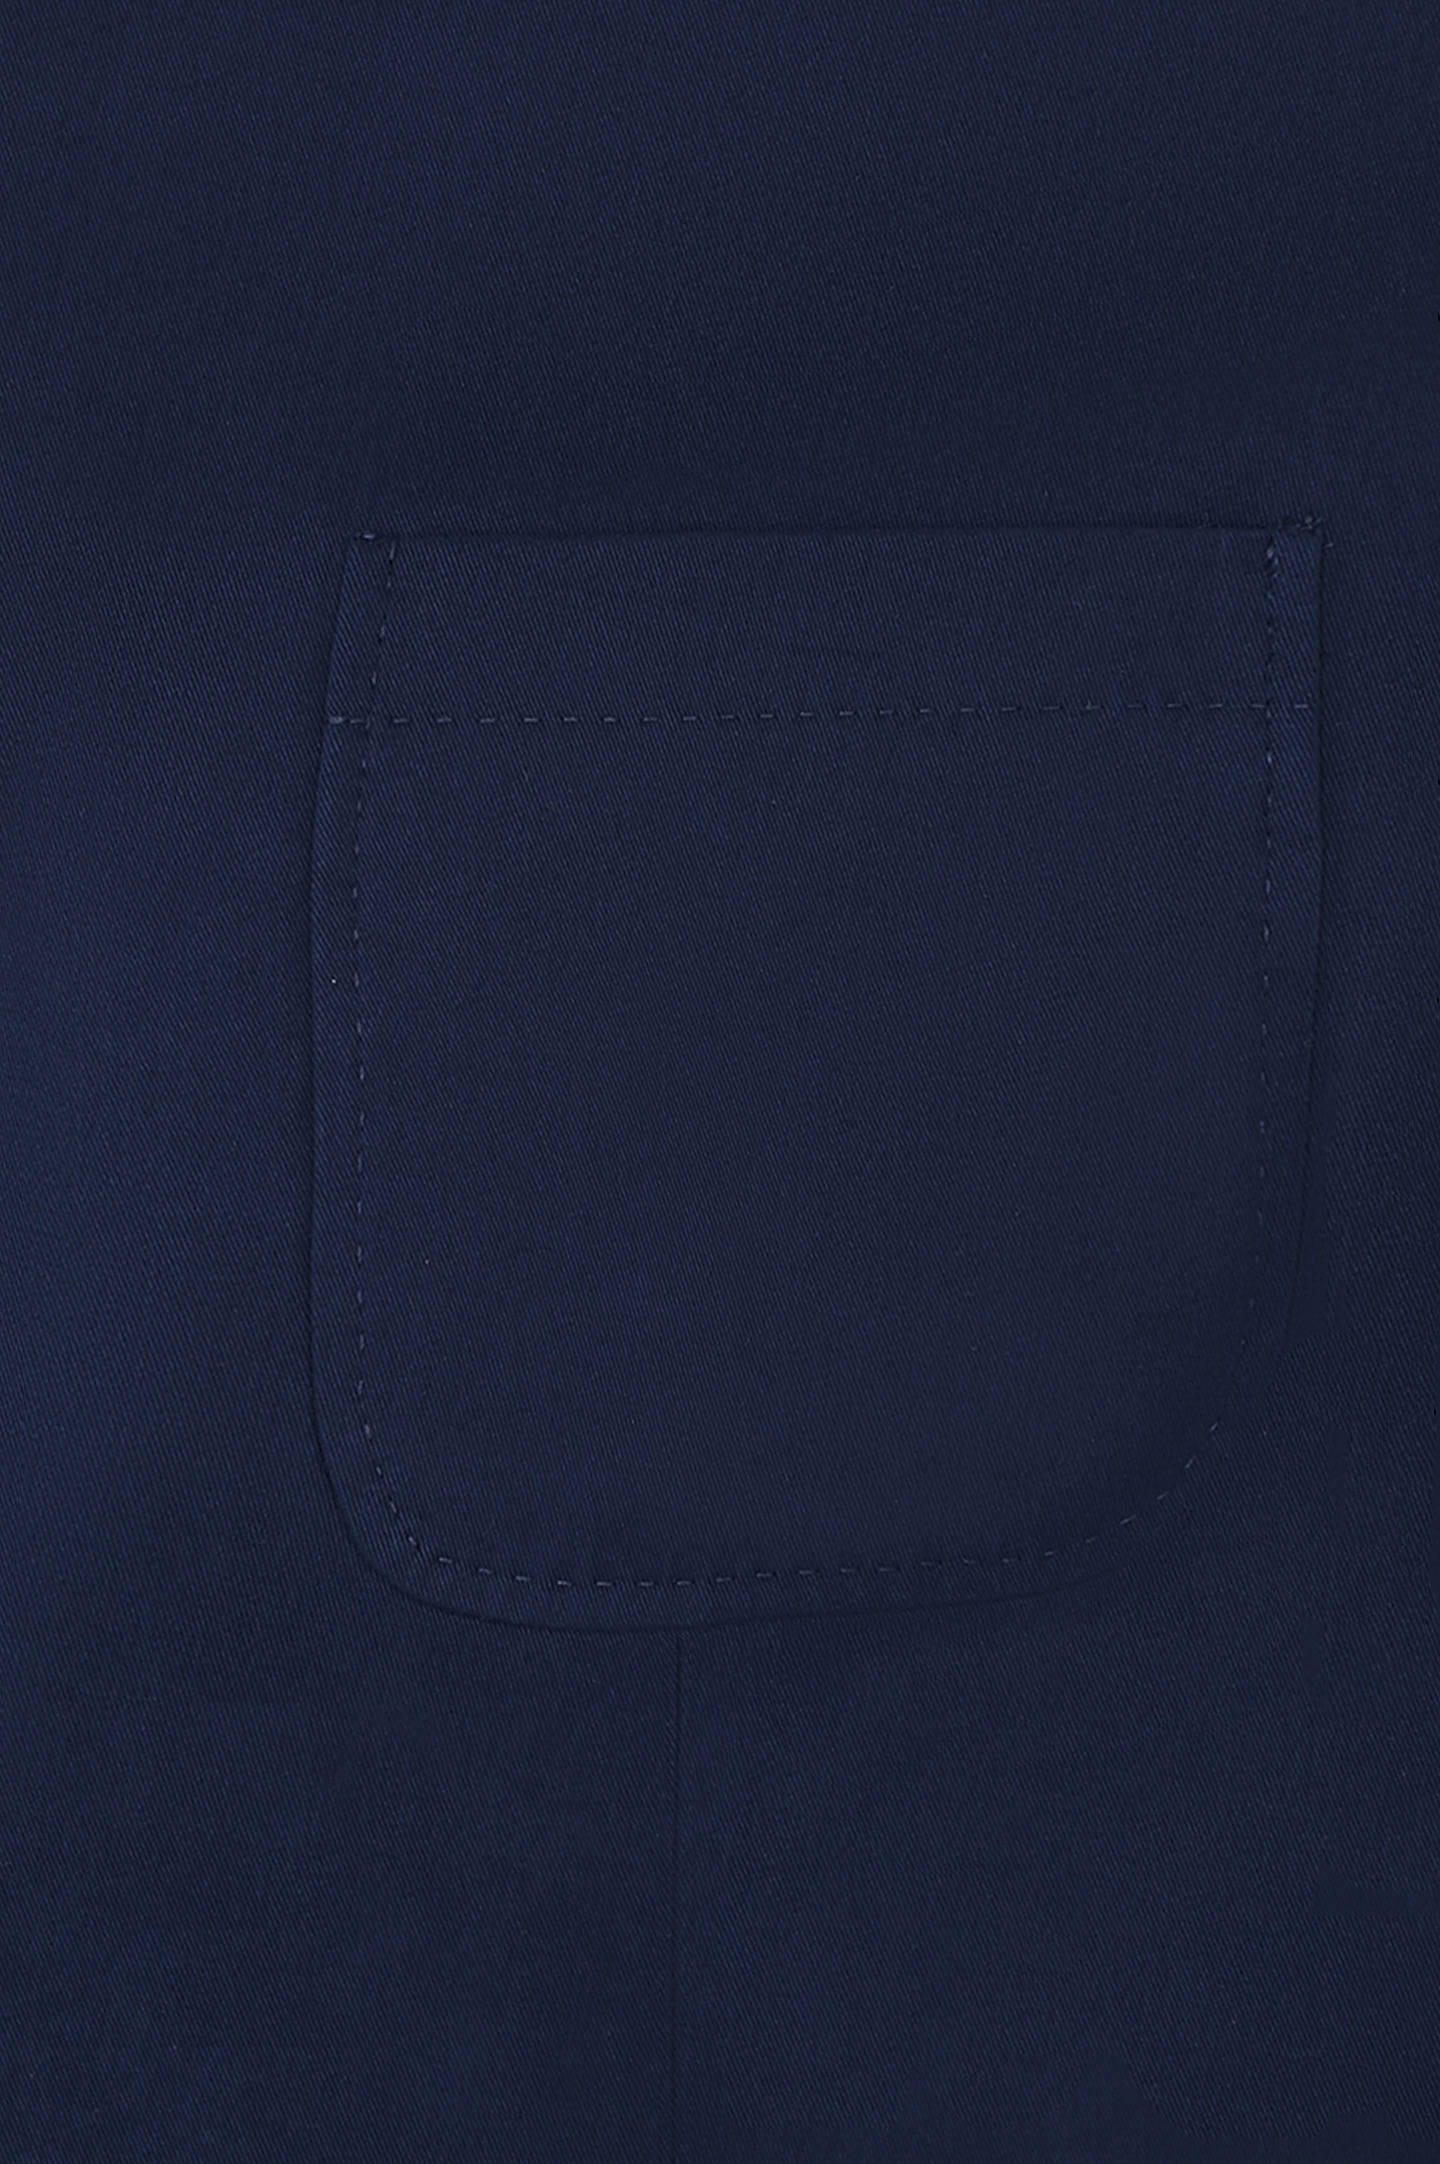 Пиджак из смеси хлопка, кашемира и эластана BRUNELLO  CUCINELLI ML4727BND, цвет: Темно-синий, Мужской